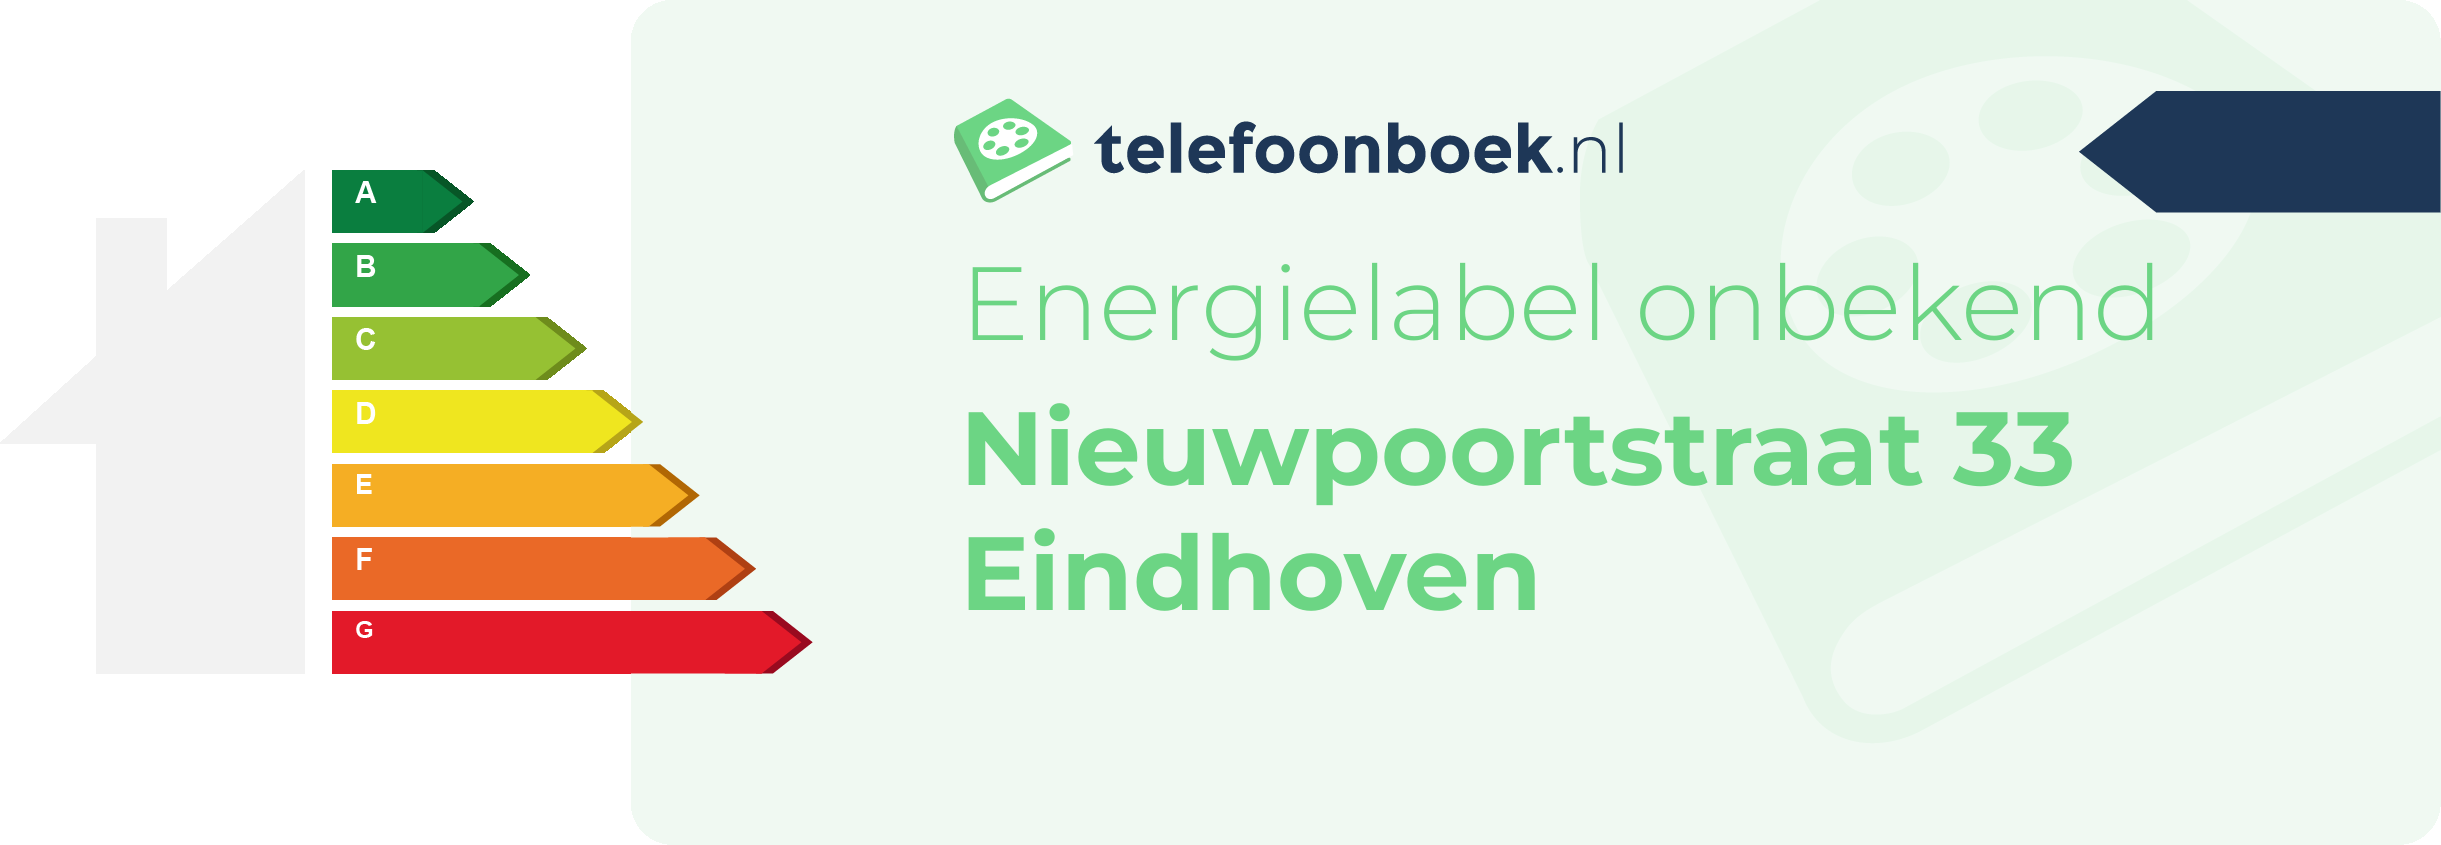 Energielabel Nieuwpoortstraat 33 Eindhoven